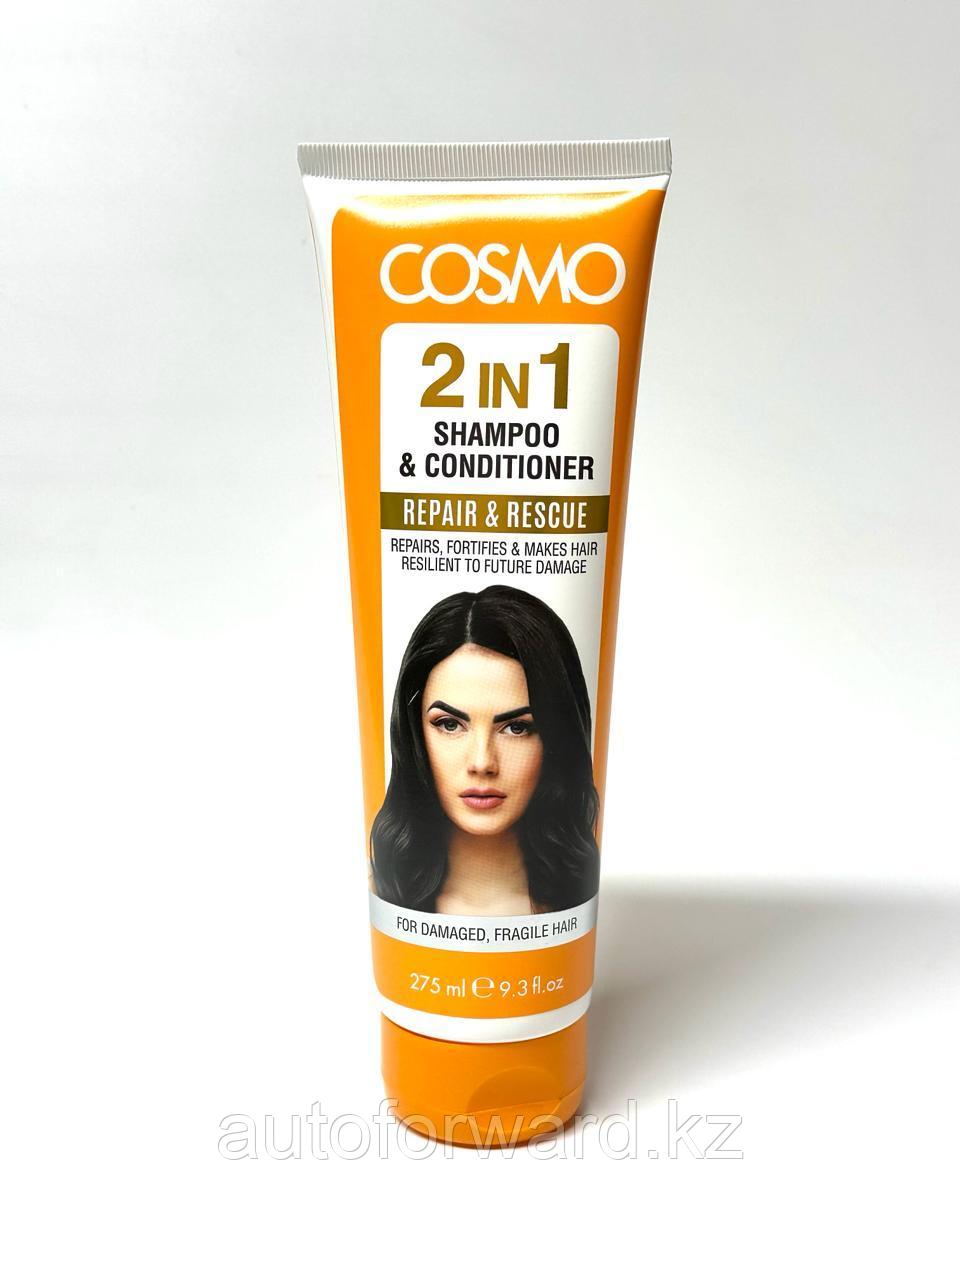 Cosmo 2 в 1 шампунь и кондиционер Repair & Rescue (Регенерация и восстановление поврежденных волос)